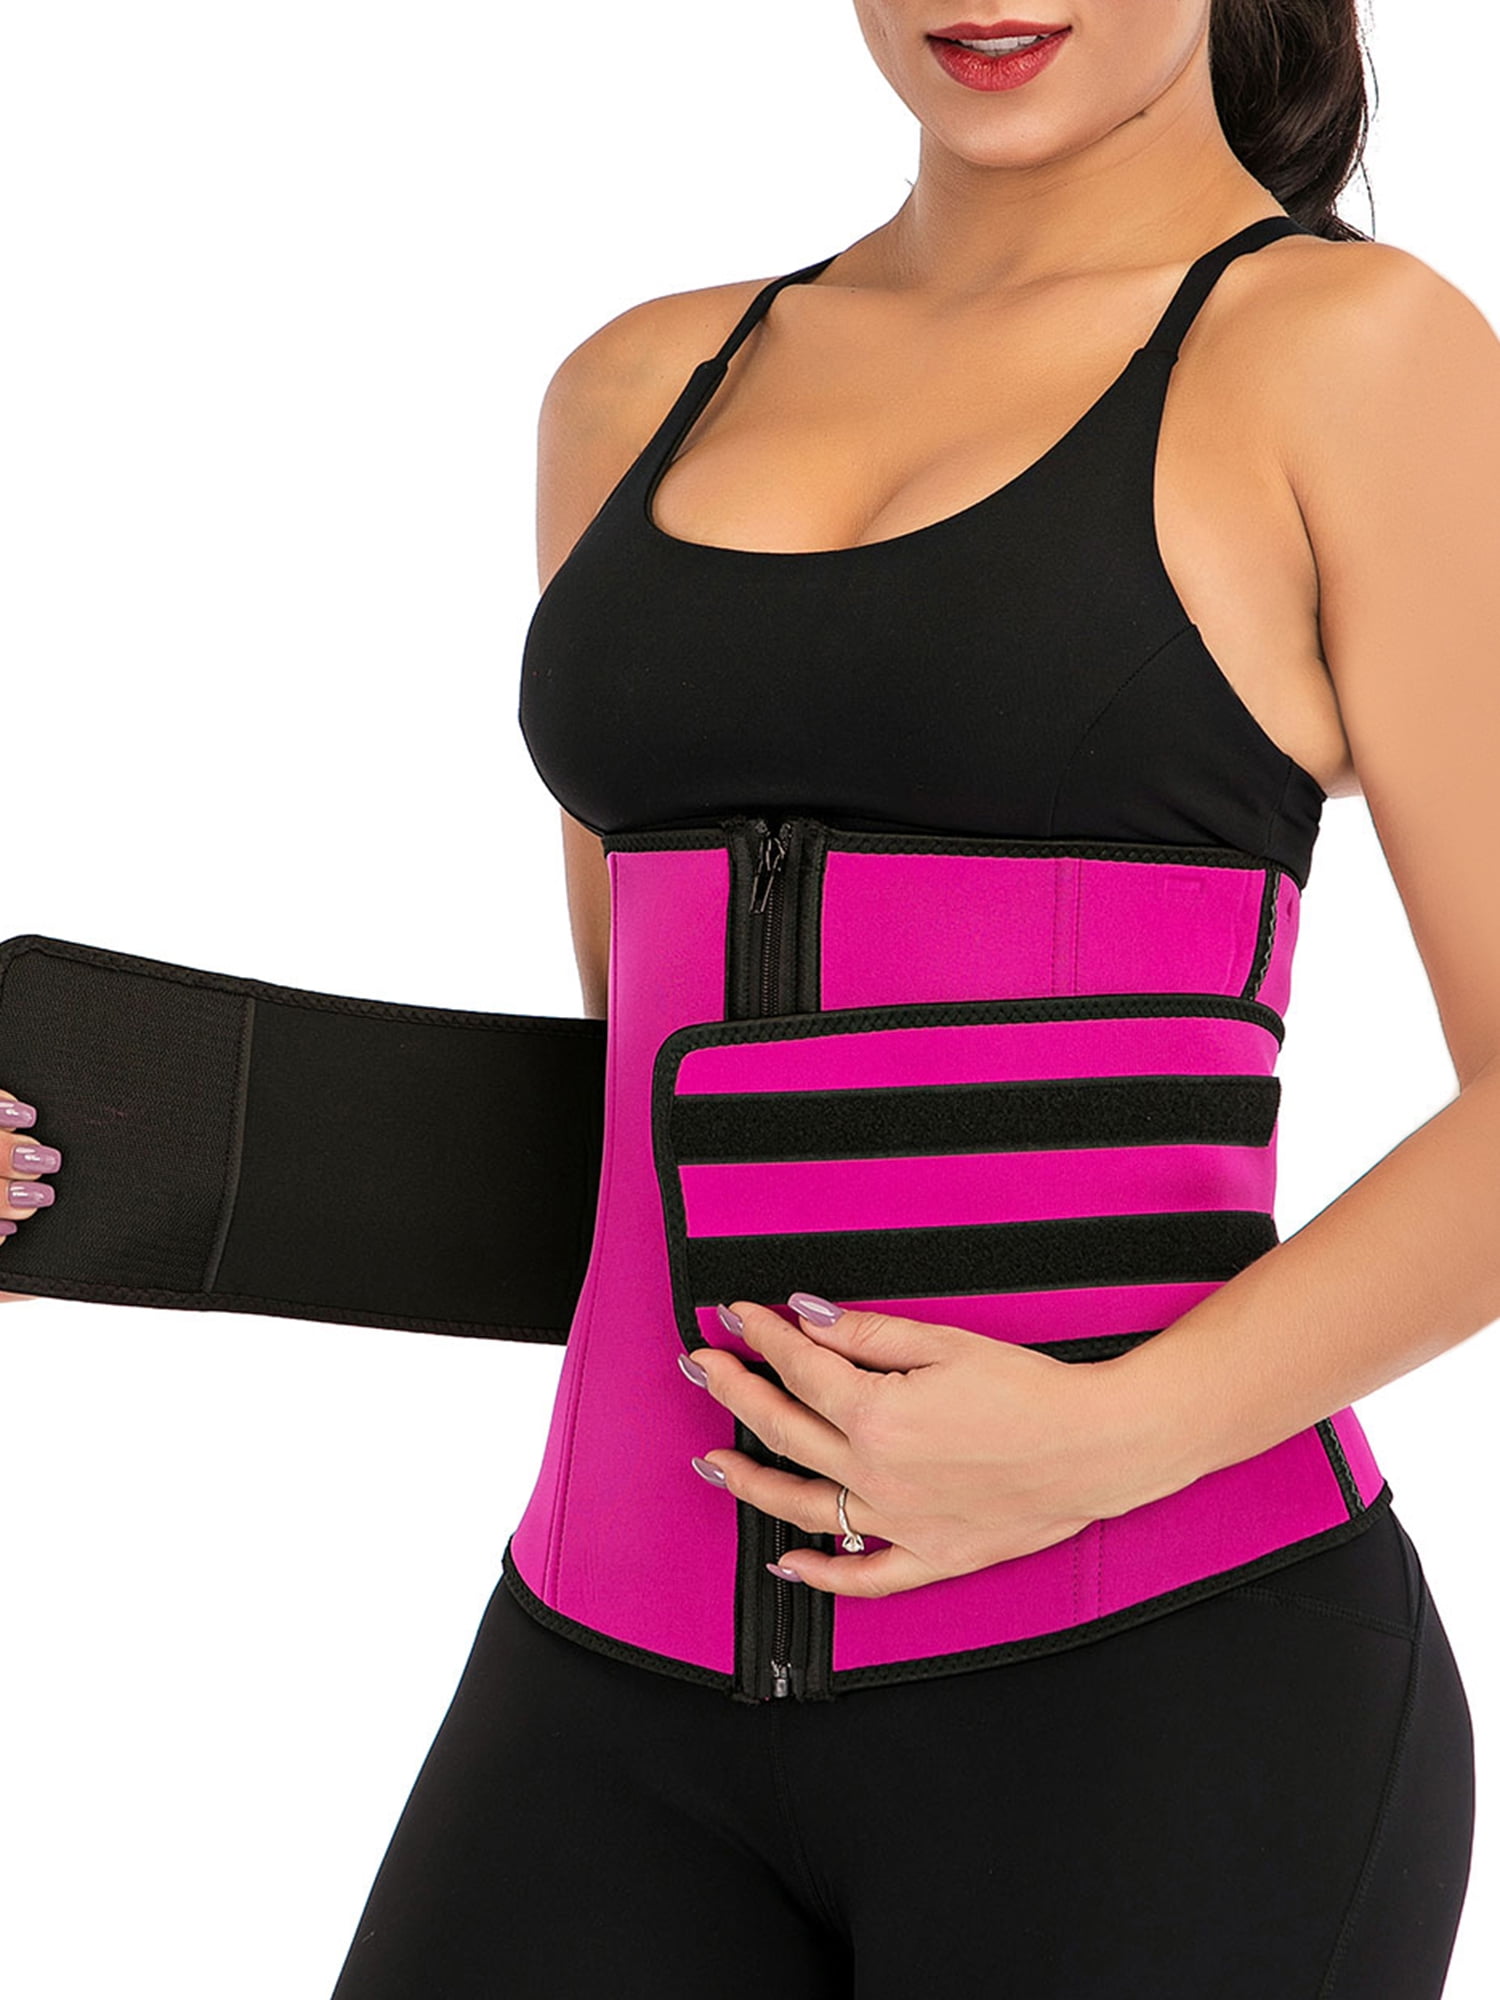 Details about   Women Waist Trainer Body Shaper Slimmer Sweat Belt Tummy Control Cincher Girdle 